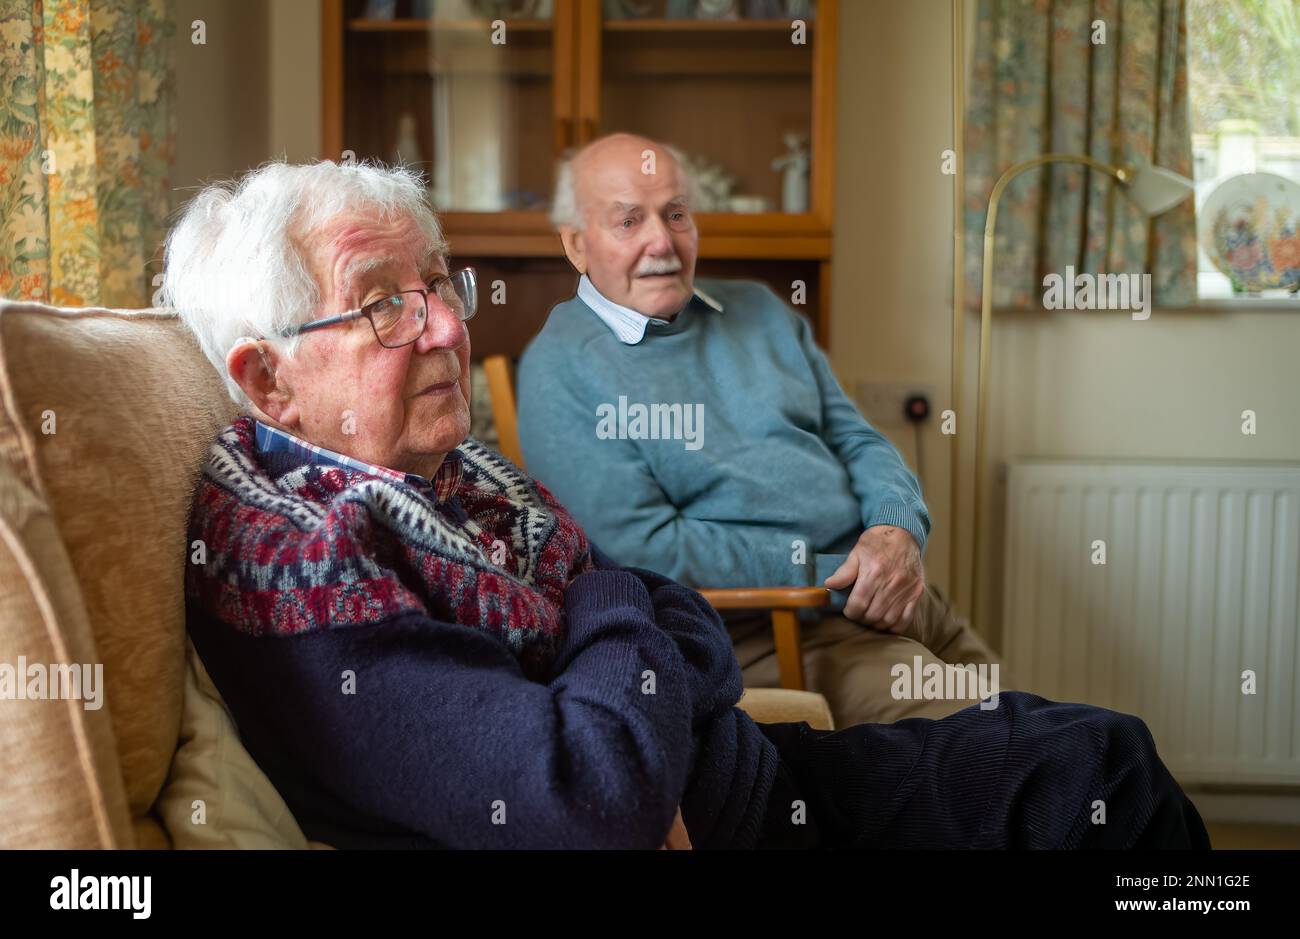 Zwei ältere Männer im Alter von 90s Jahren, die lebenslange Freunde sind, plaudern über die alten Zeiten. Stockfoto